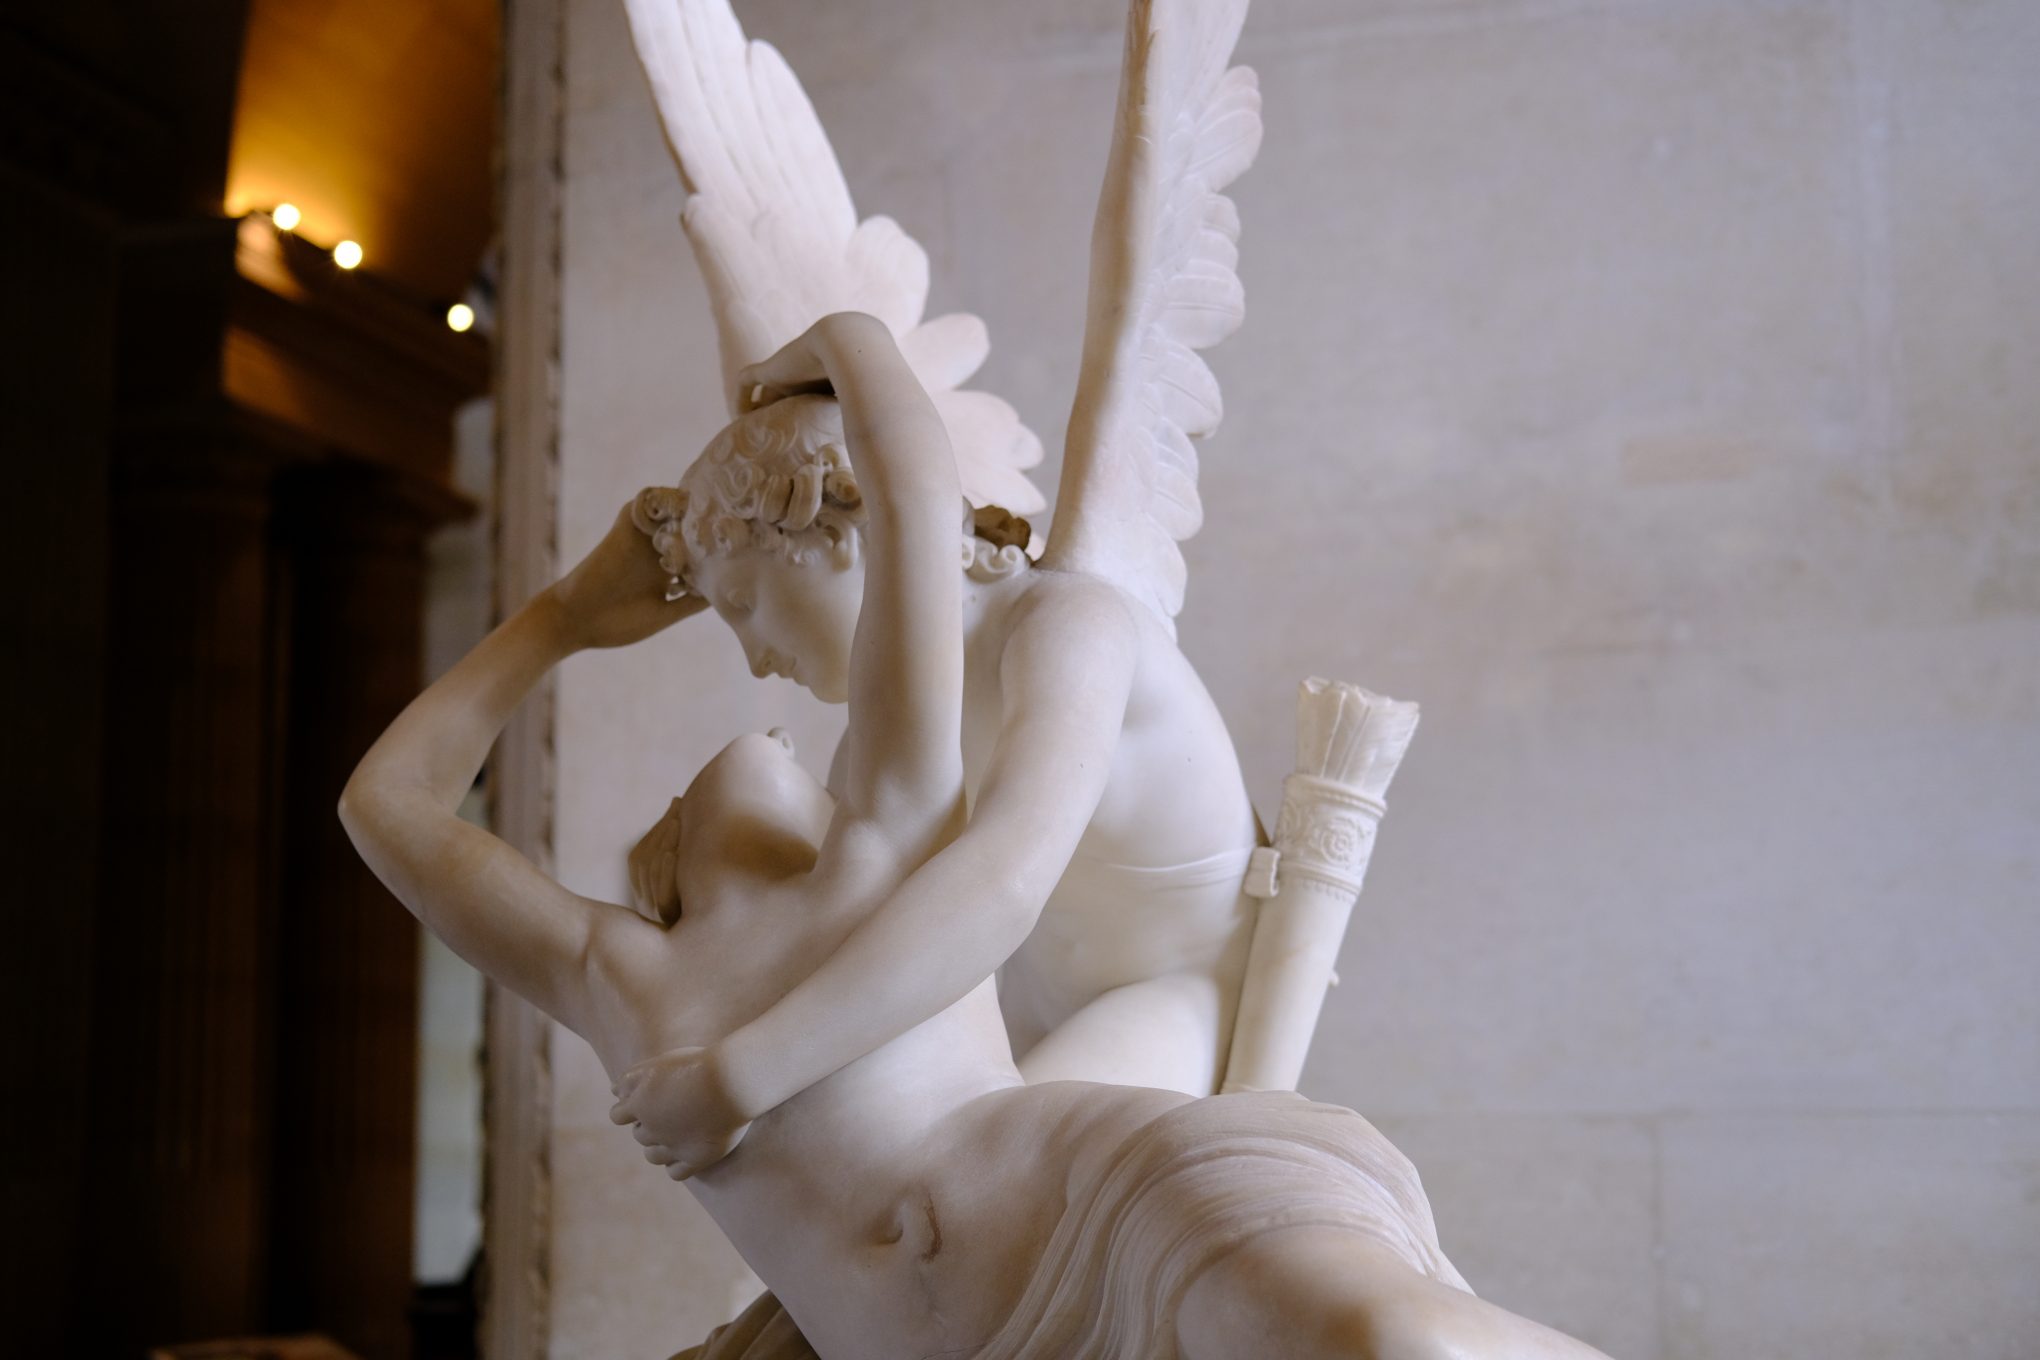 Un ange et une déesse. Cupidon et Psyché taillés dans un même bloc de marbre